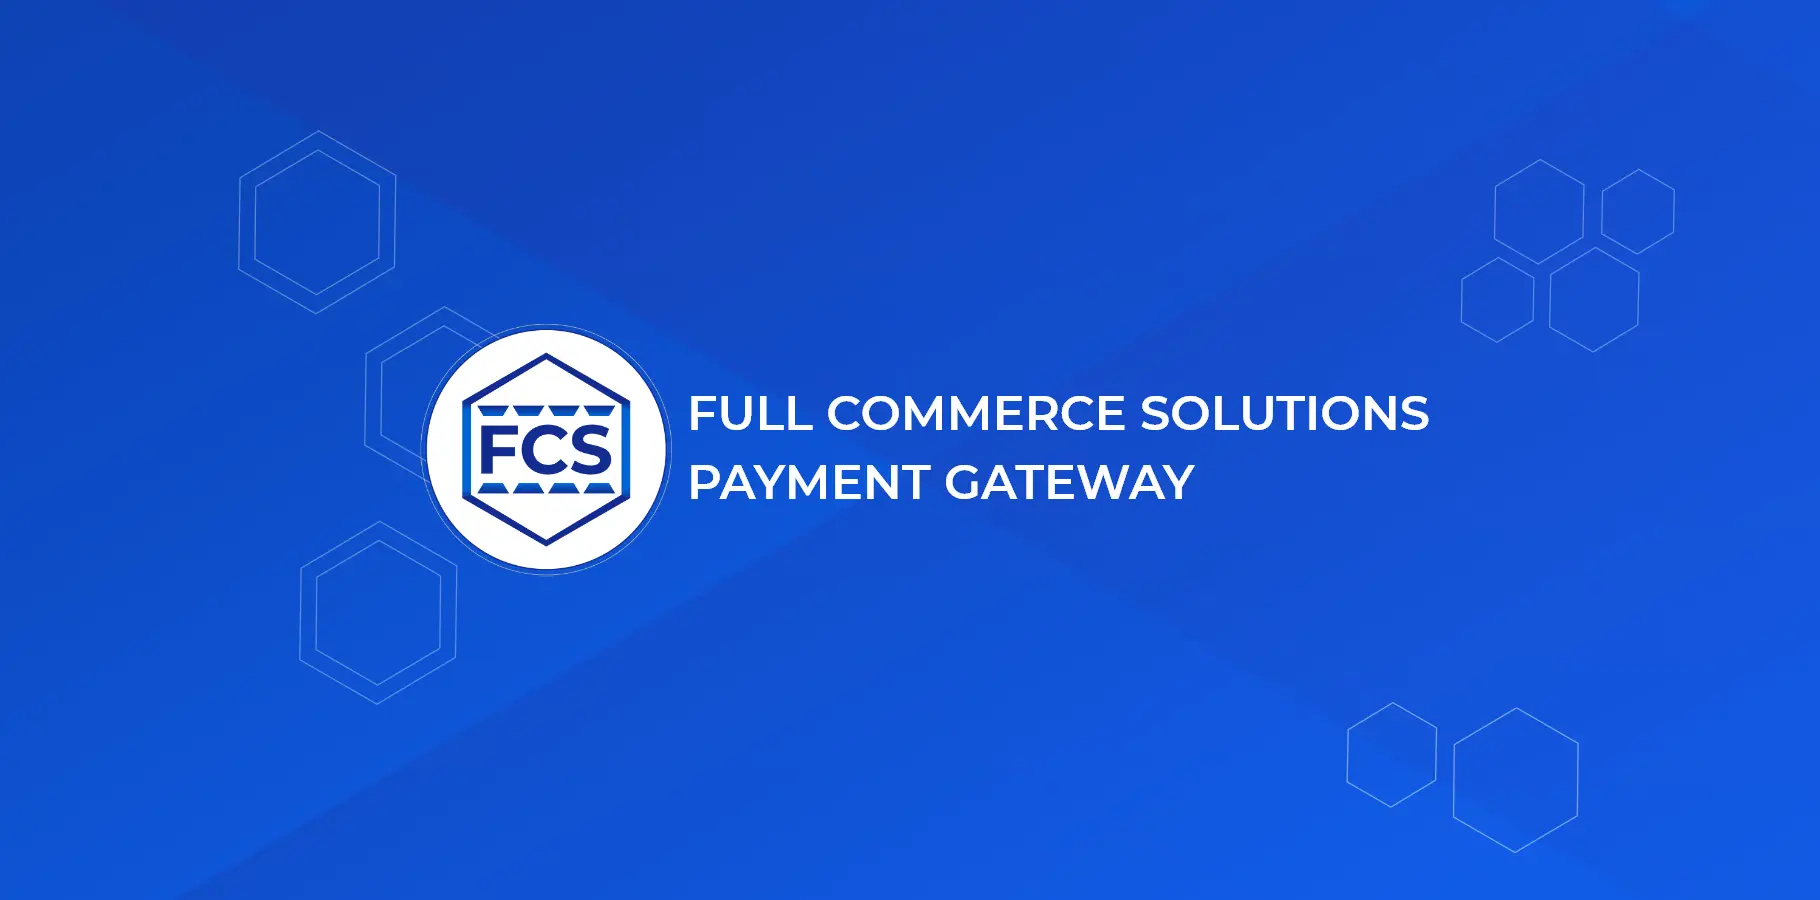 Full Commerce Solutions Logo & Branding